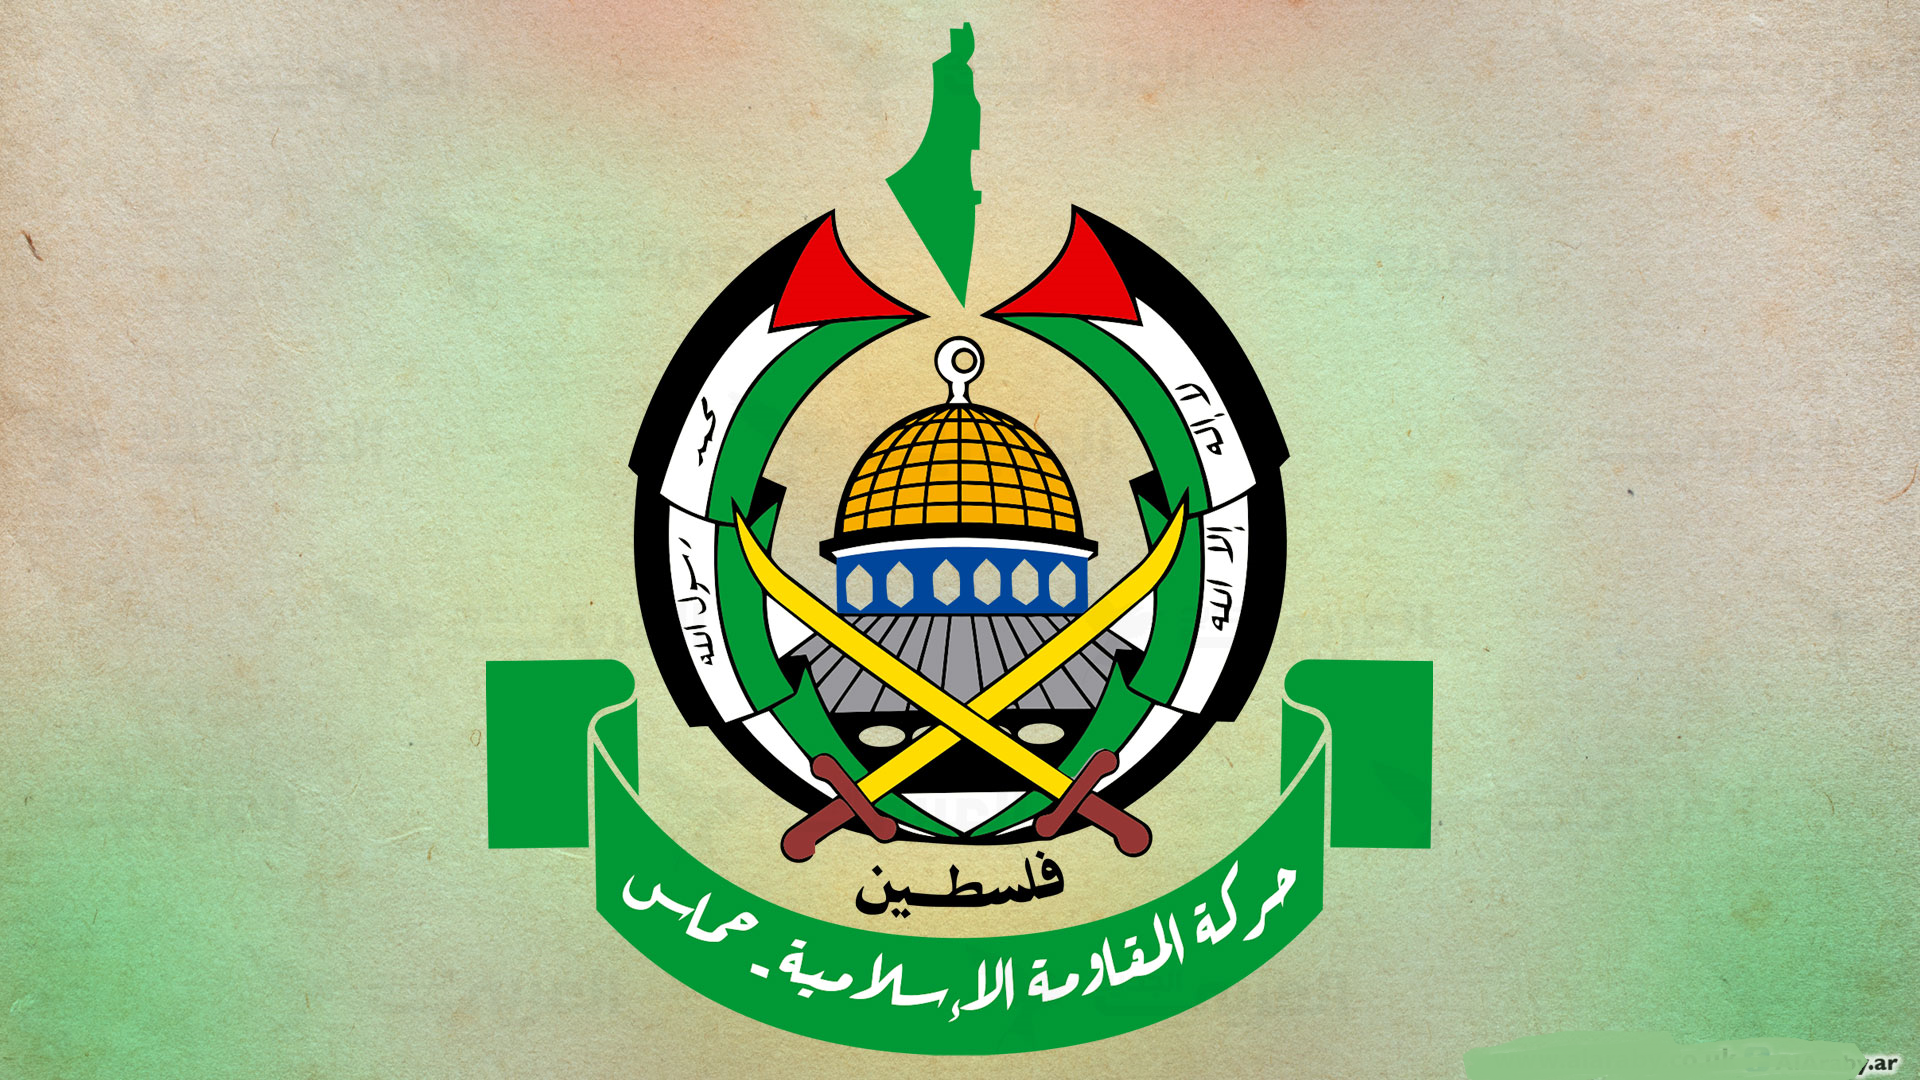 حماس : ابلغنا الوسطاء القطري والمصري موافقتنا على مقترحهما لوقف إطلاق النار